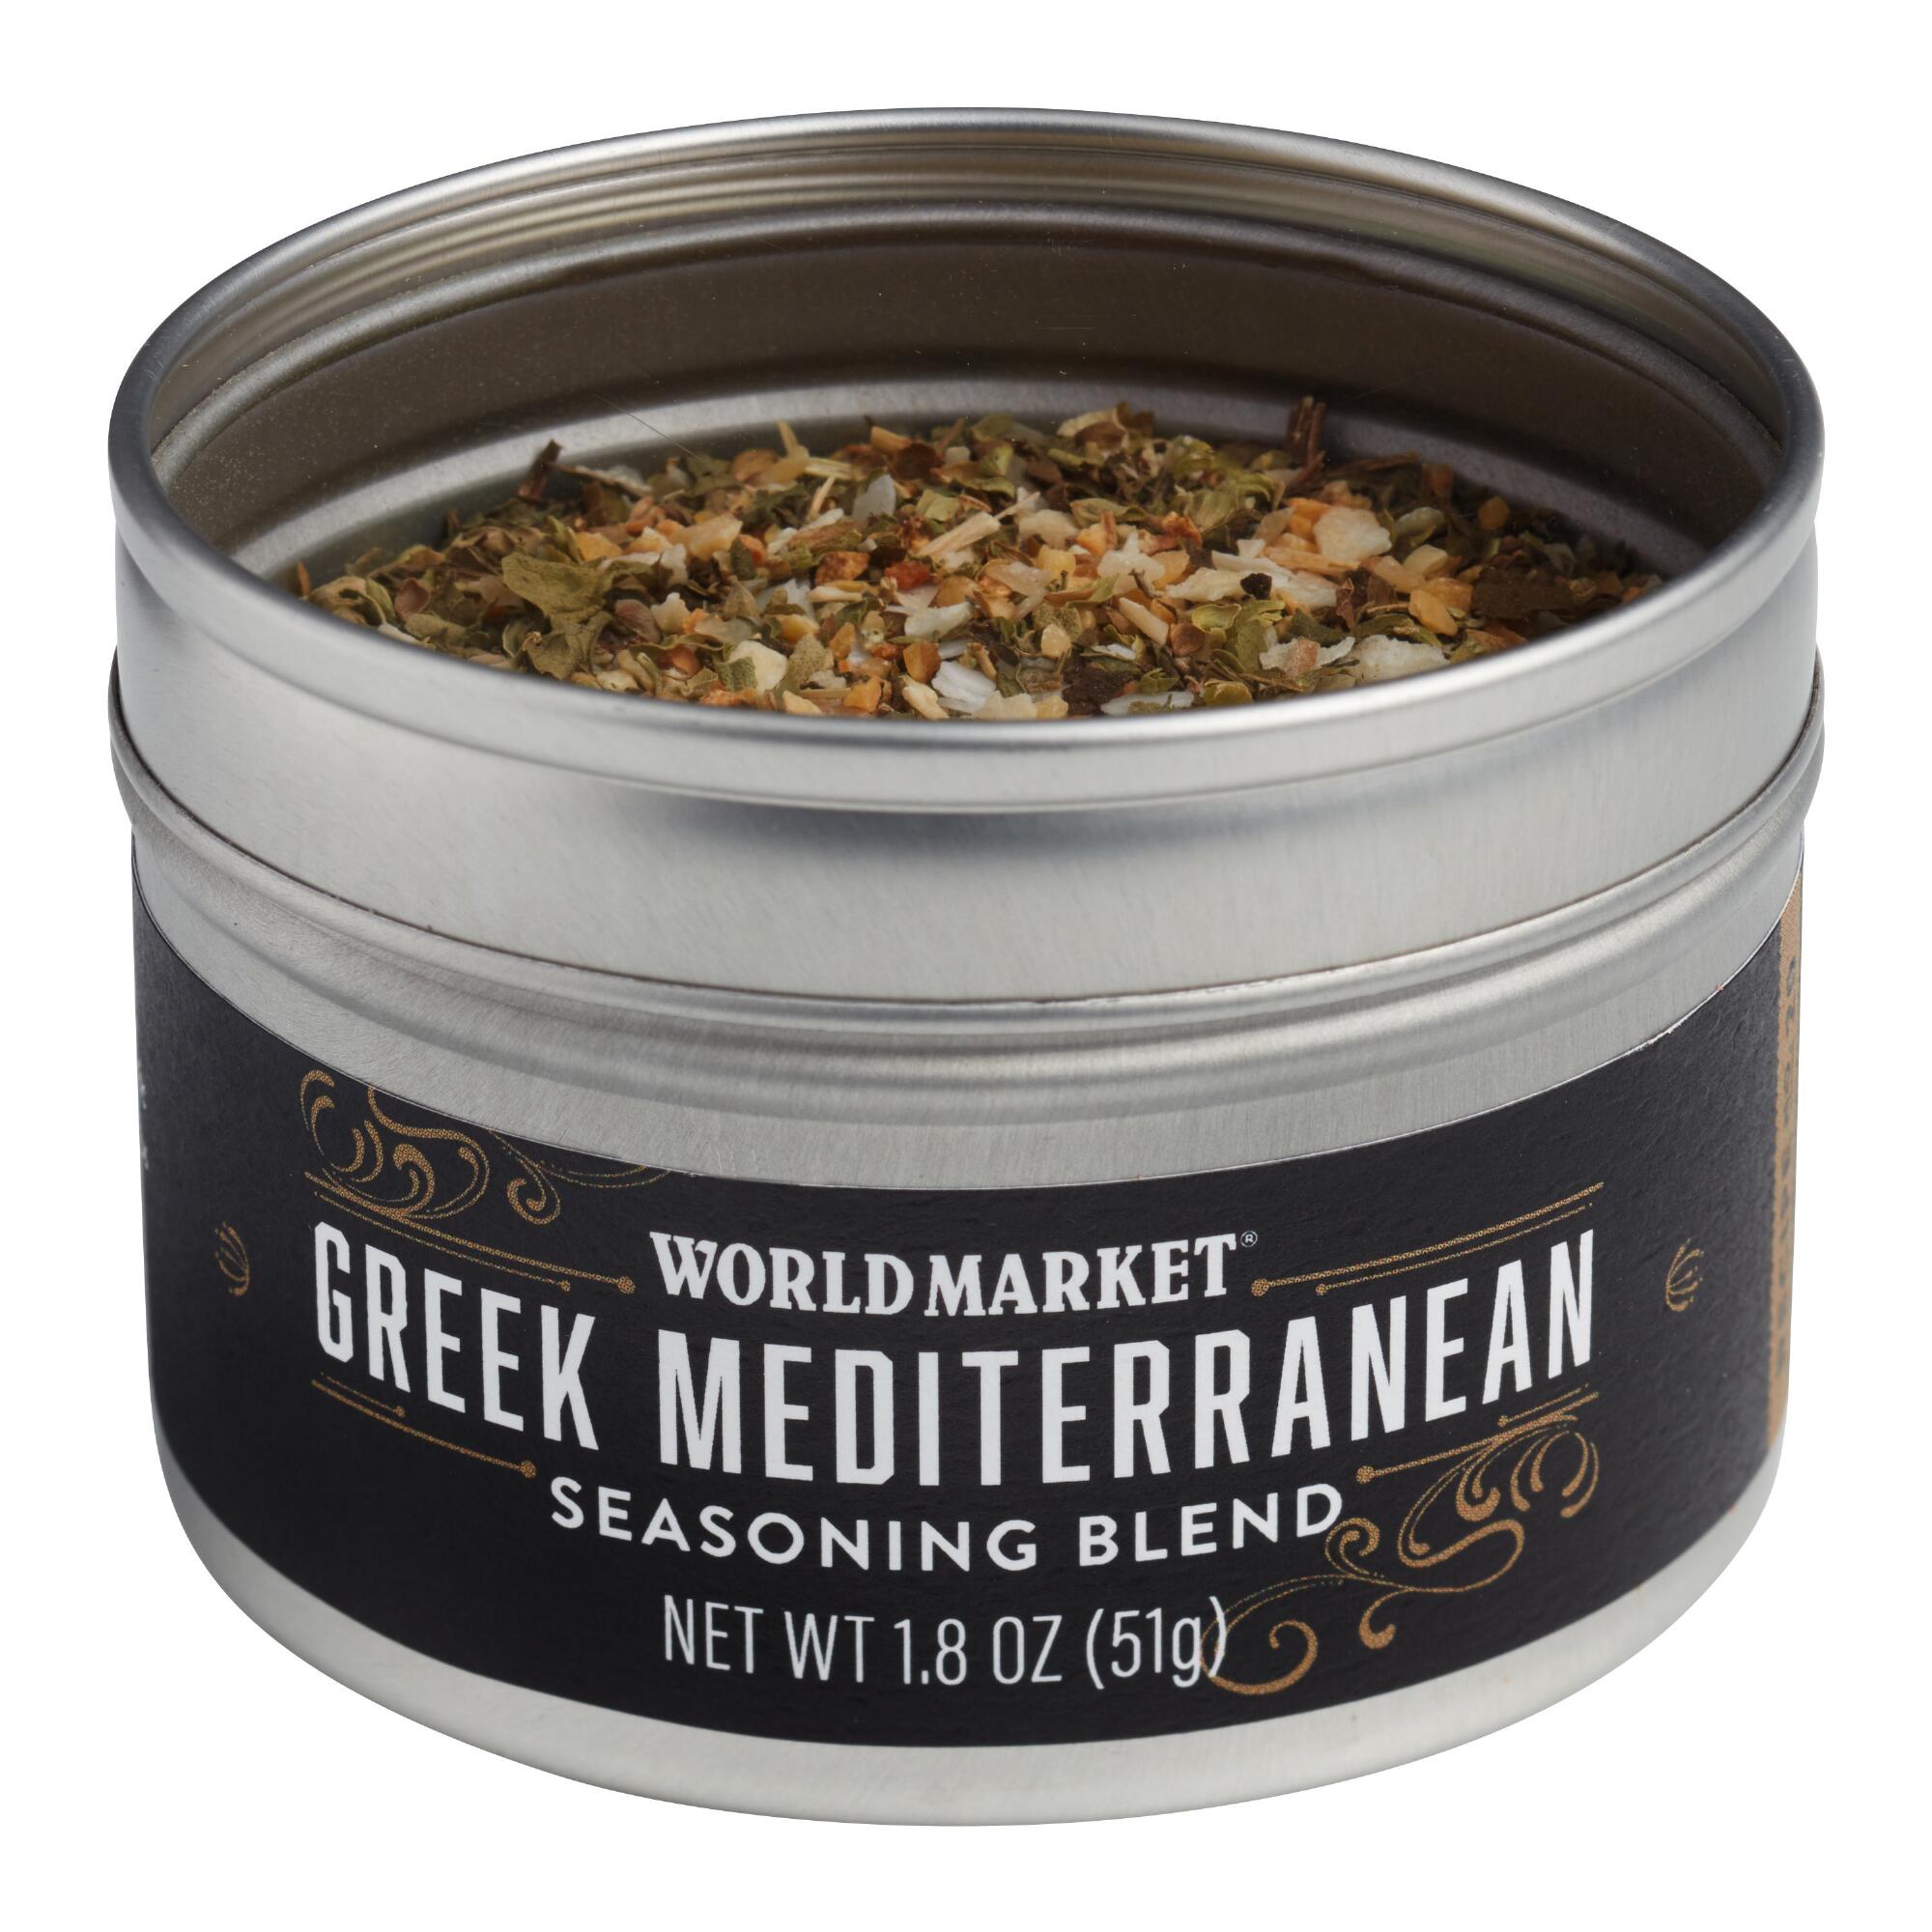 World Market Greek Mediterranean Spice Blend by World Market